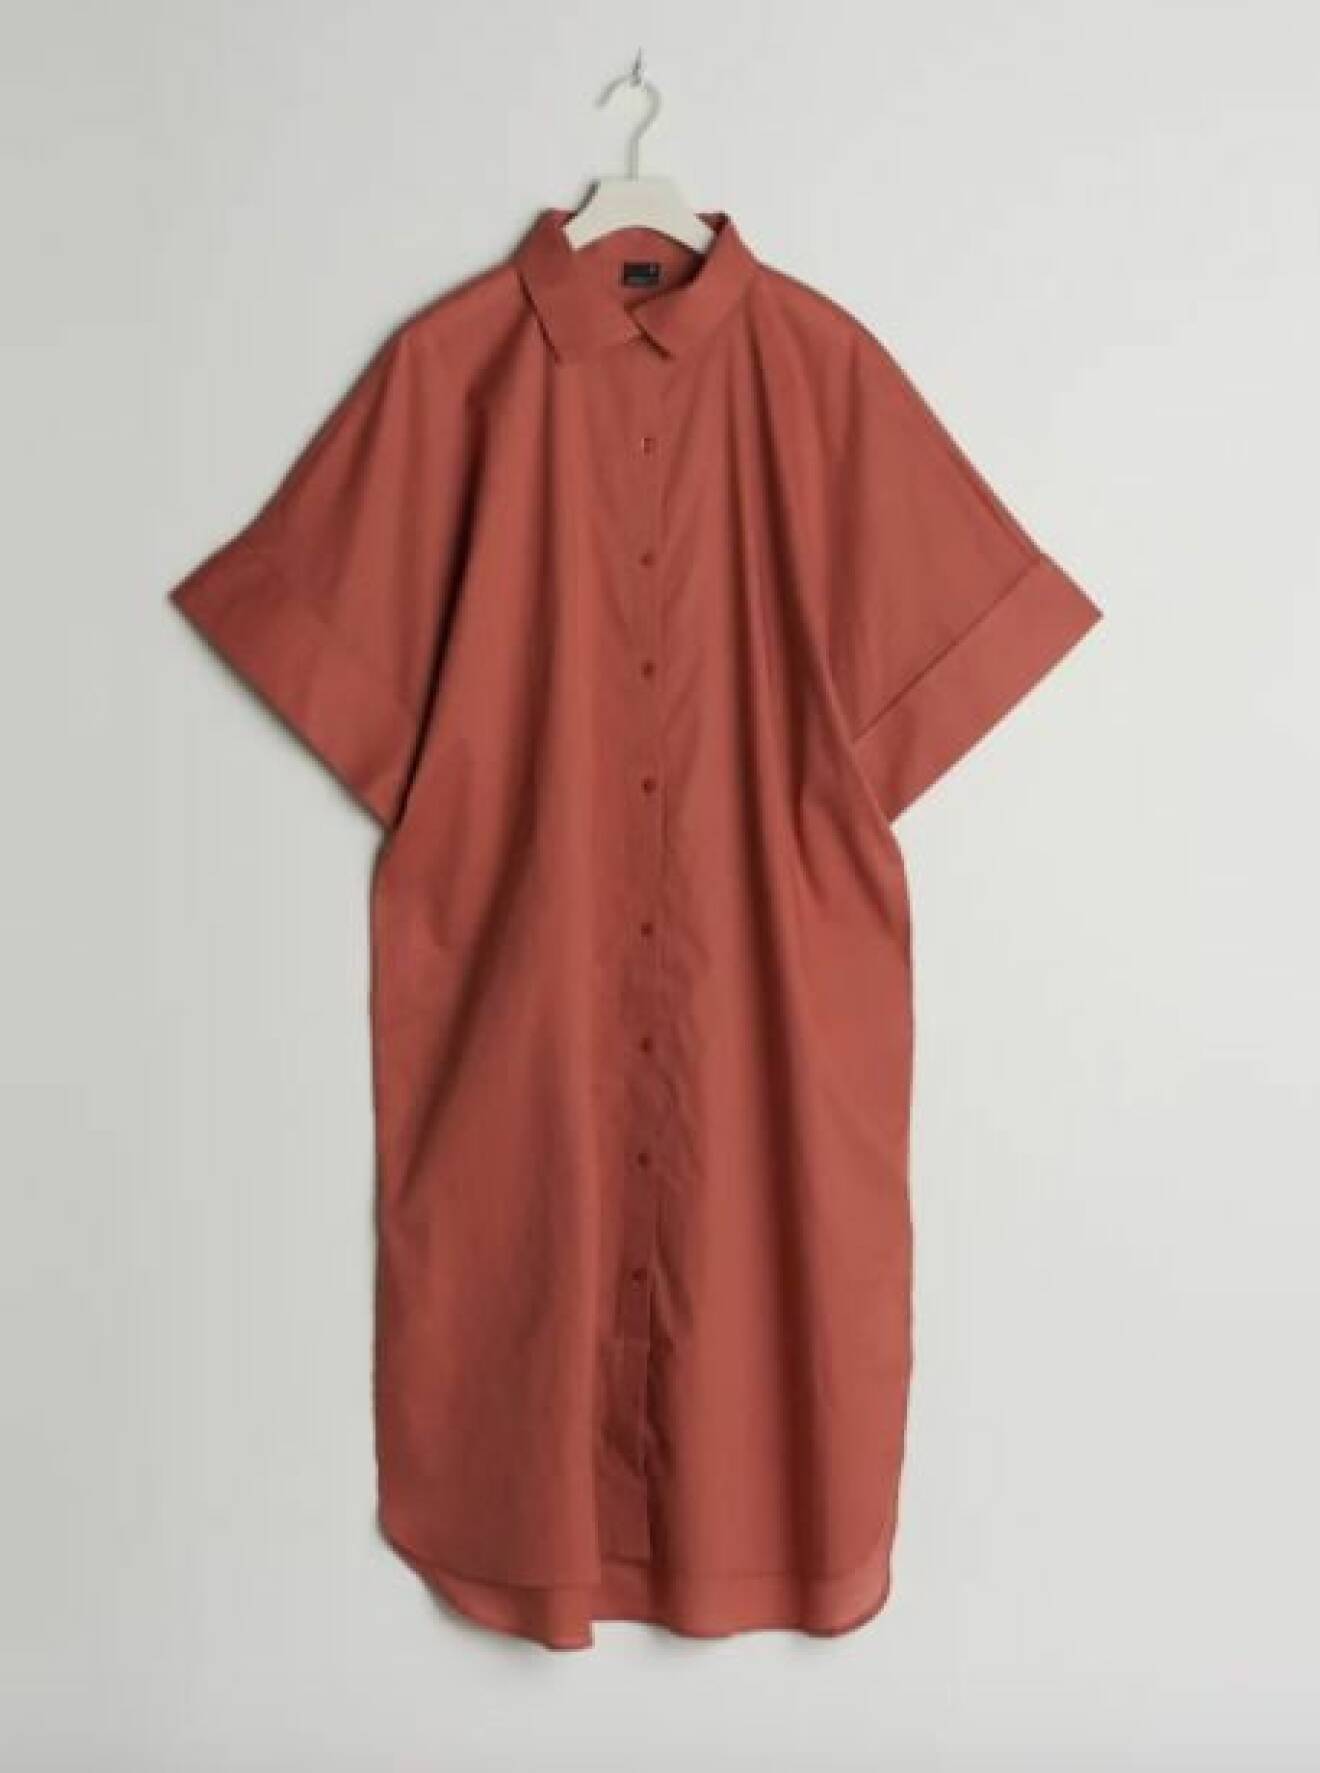 Rostfärgad skjortklänning i lång modell med korta, vida ärmar. Skjortklänning från Gina tricot.